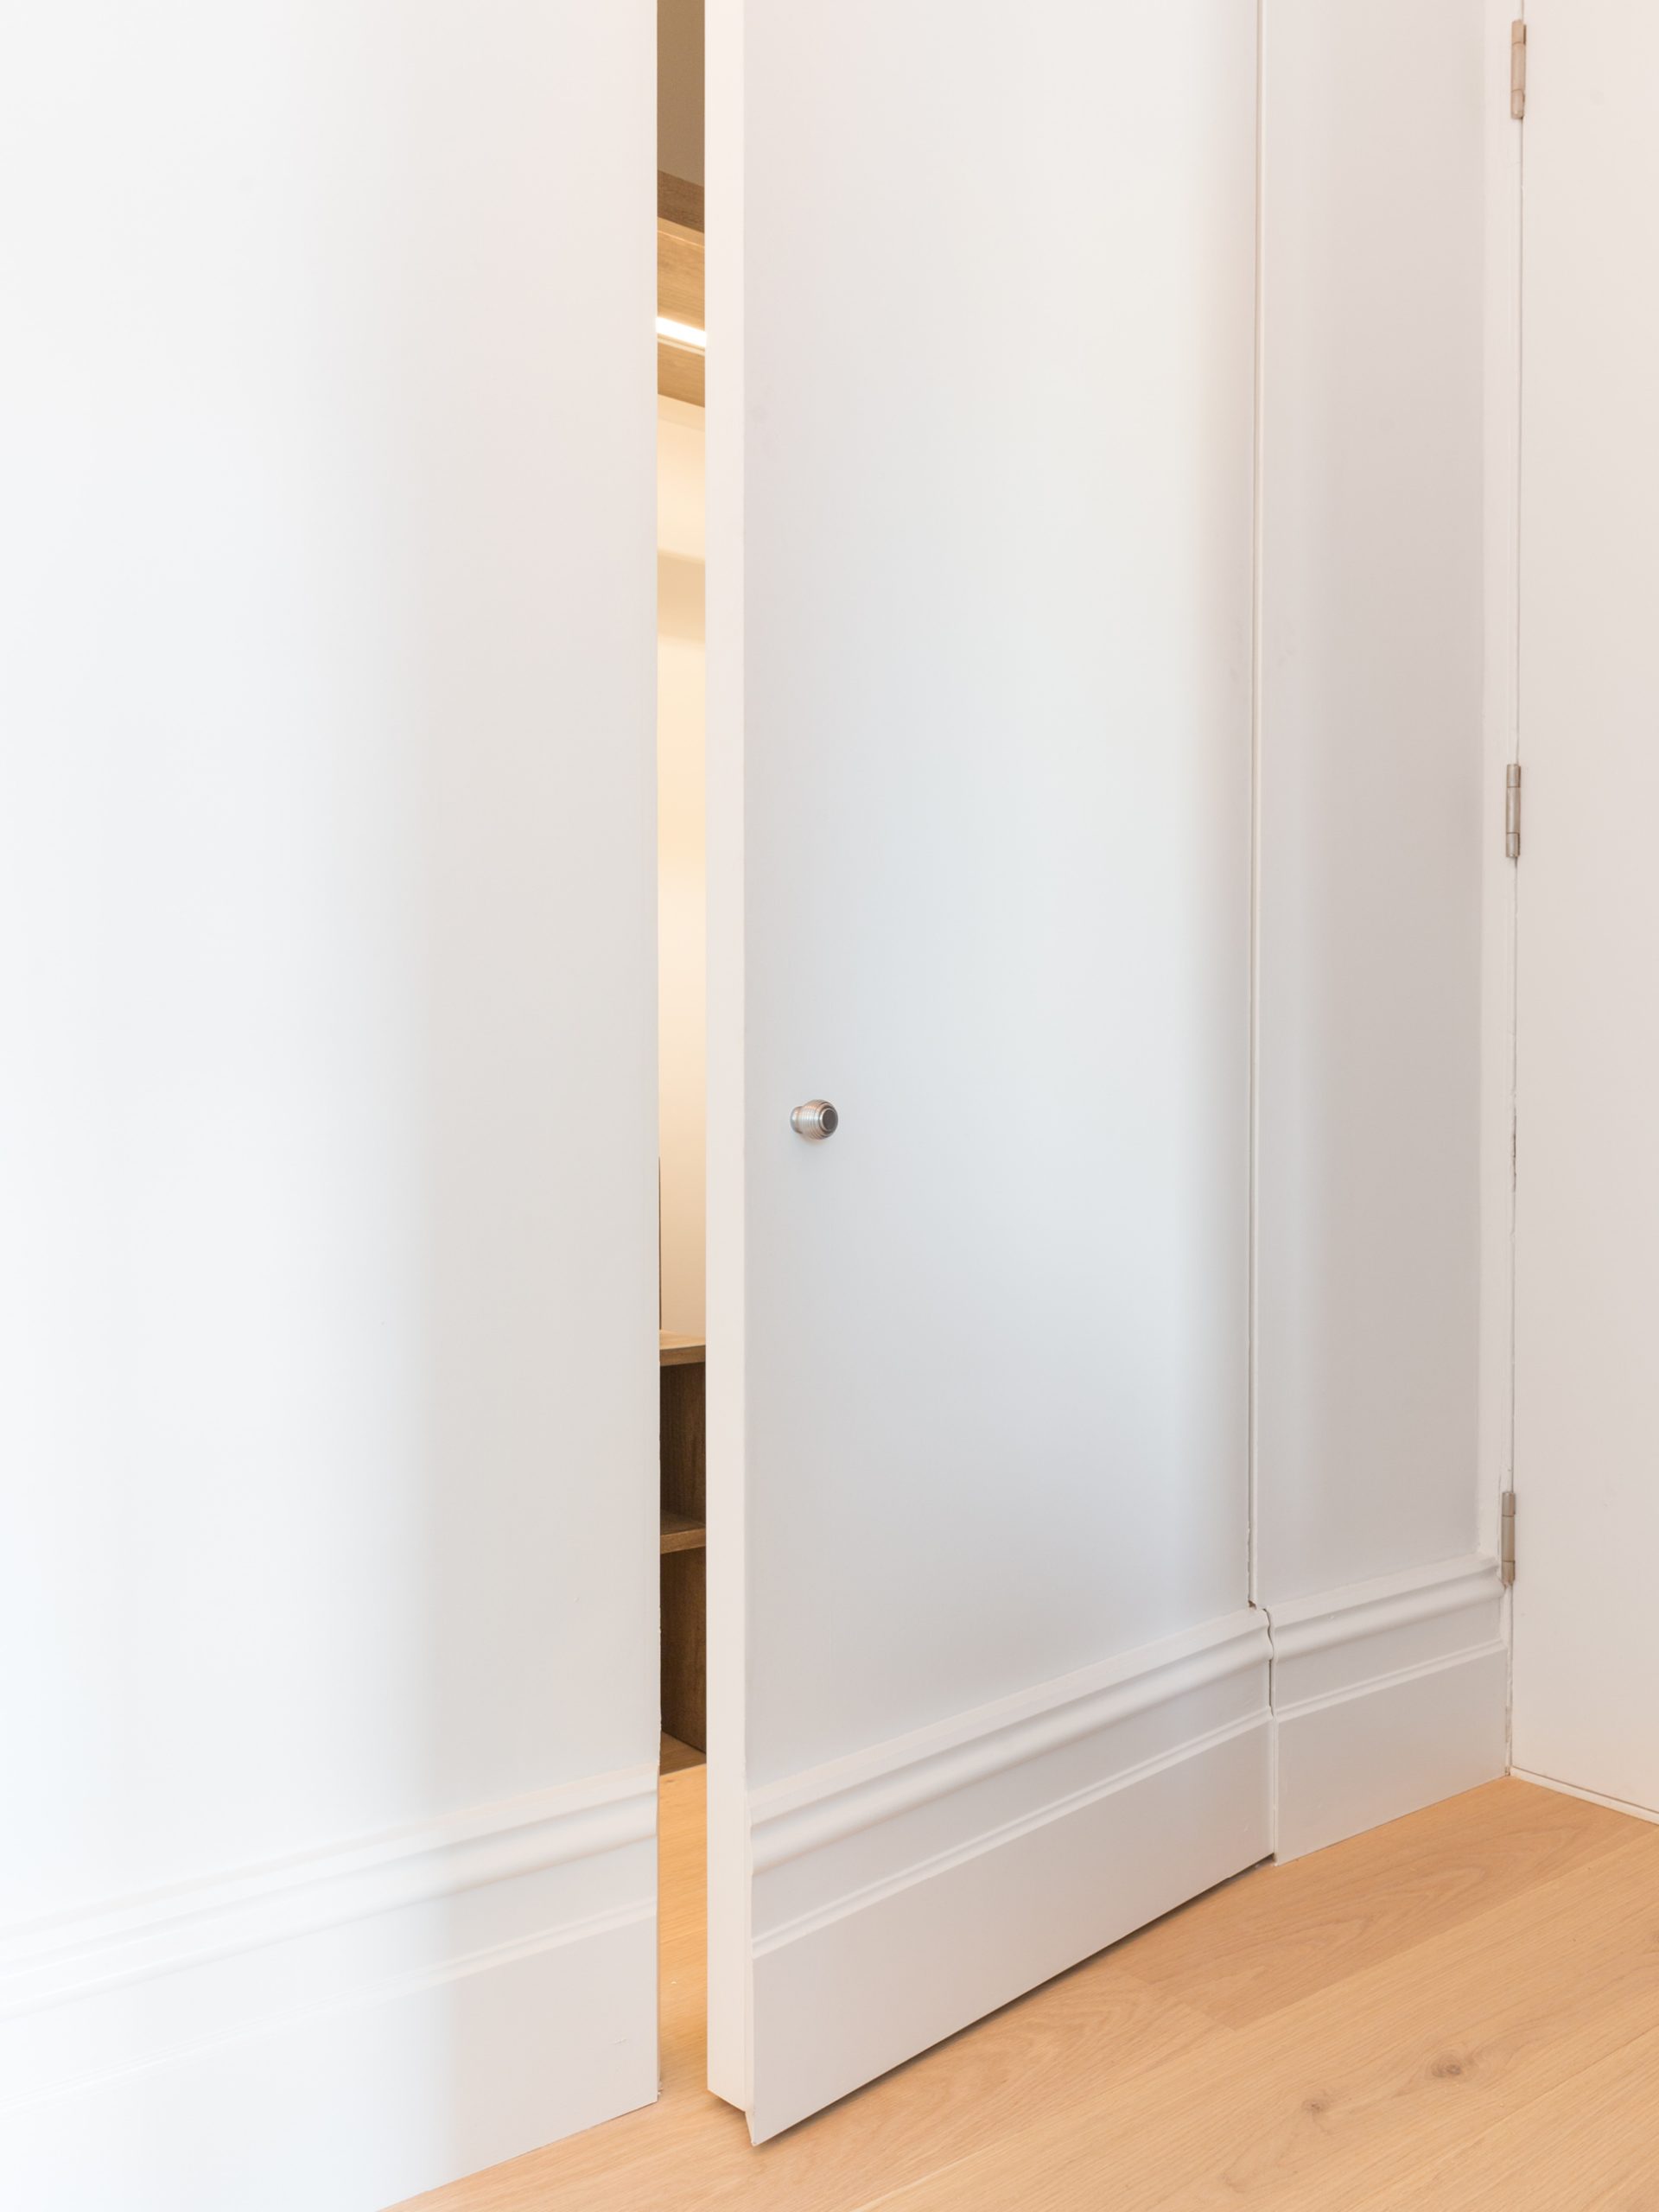 Bloomsbury Apartment - Hallway - Pivot door to cloaks cupboard - Open